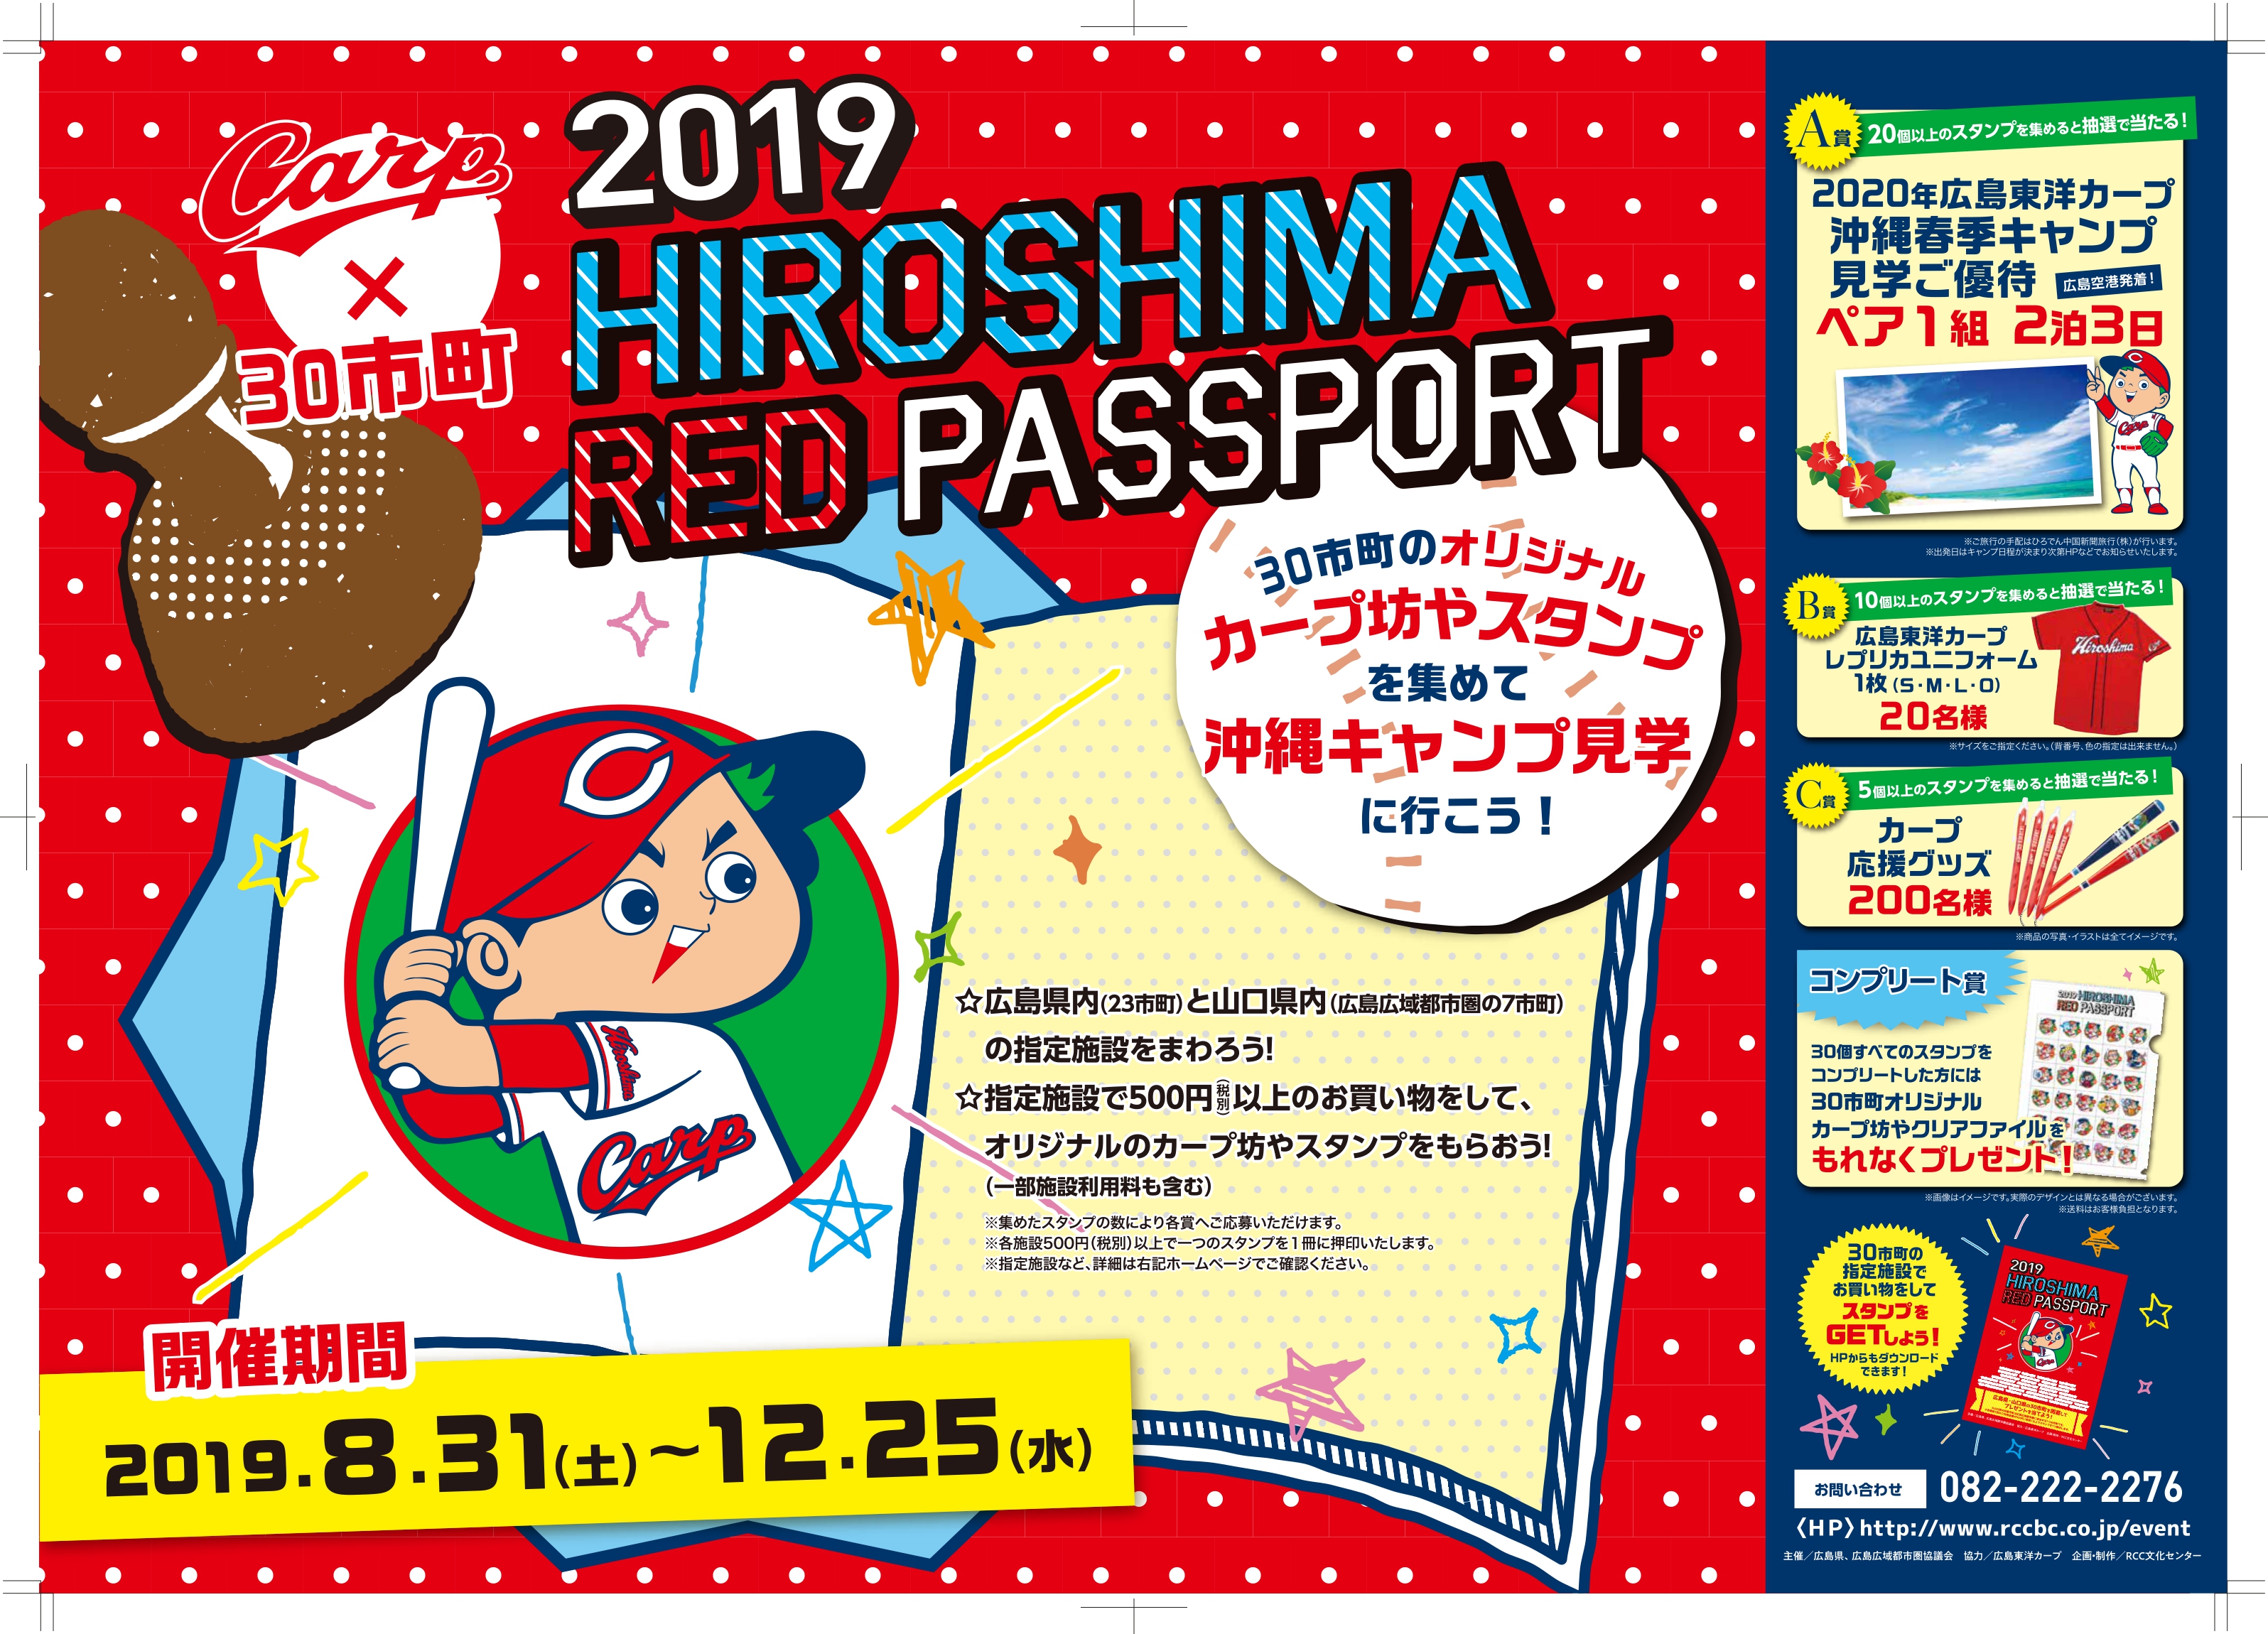 このイベントは終了致しました カープ 広島 山口30市町 19 Hiroshima Red Passport 開催 新着情報 広告 イベント Rccbc Rcc文化センター